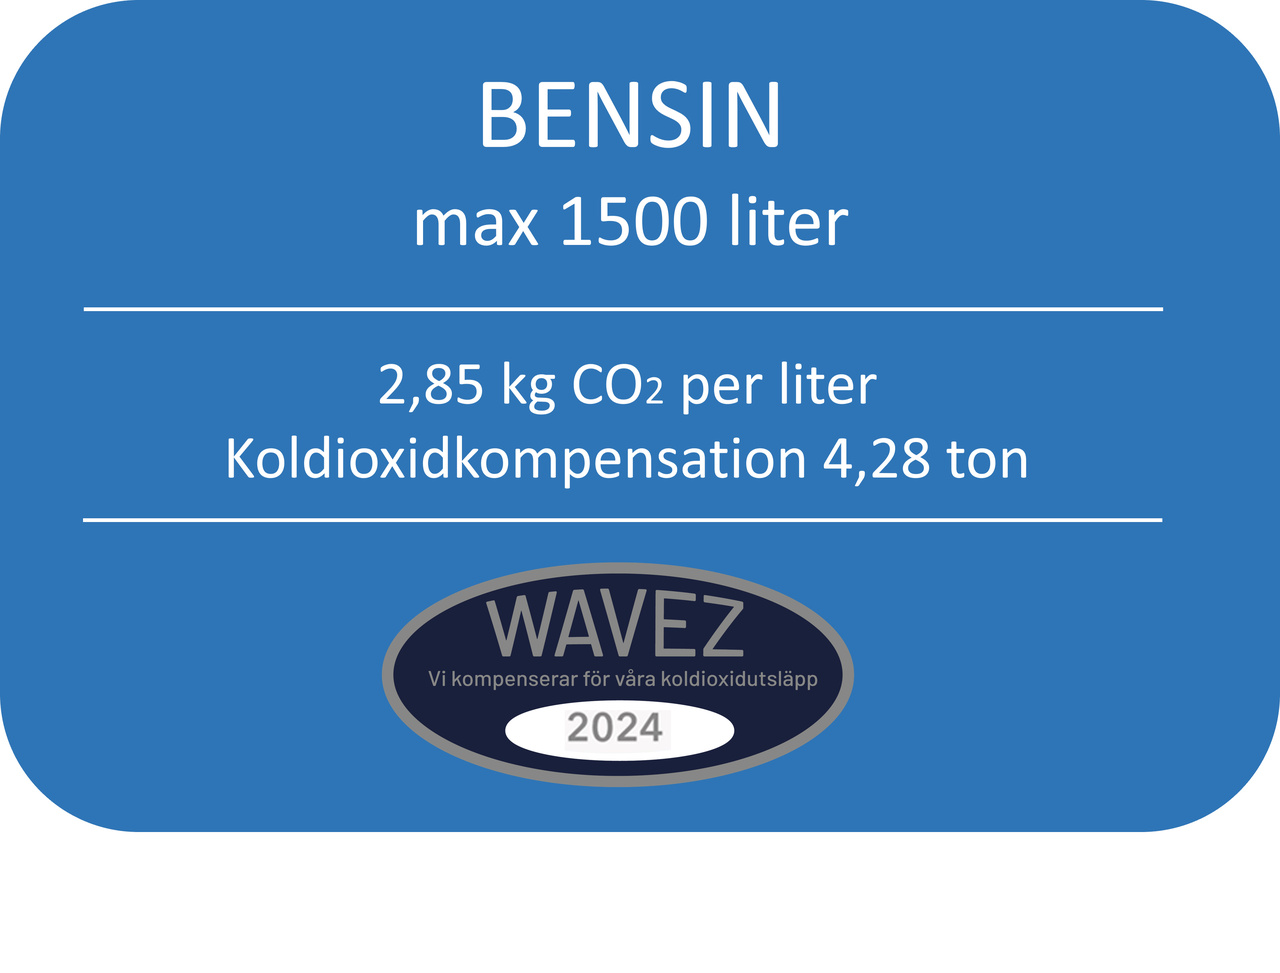 KOLDIOXIDKOMP FÖR 1500L BENSIN -4,28 TON CO2 WAVEZ